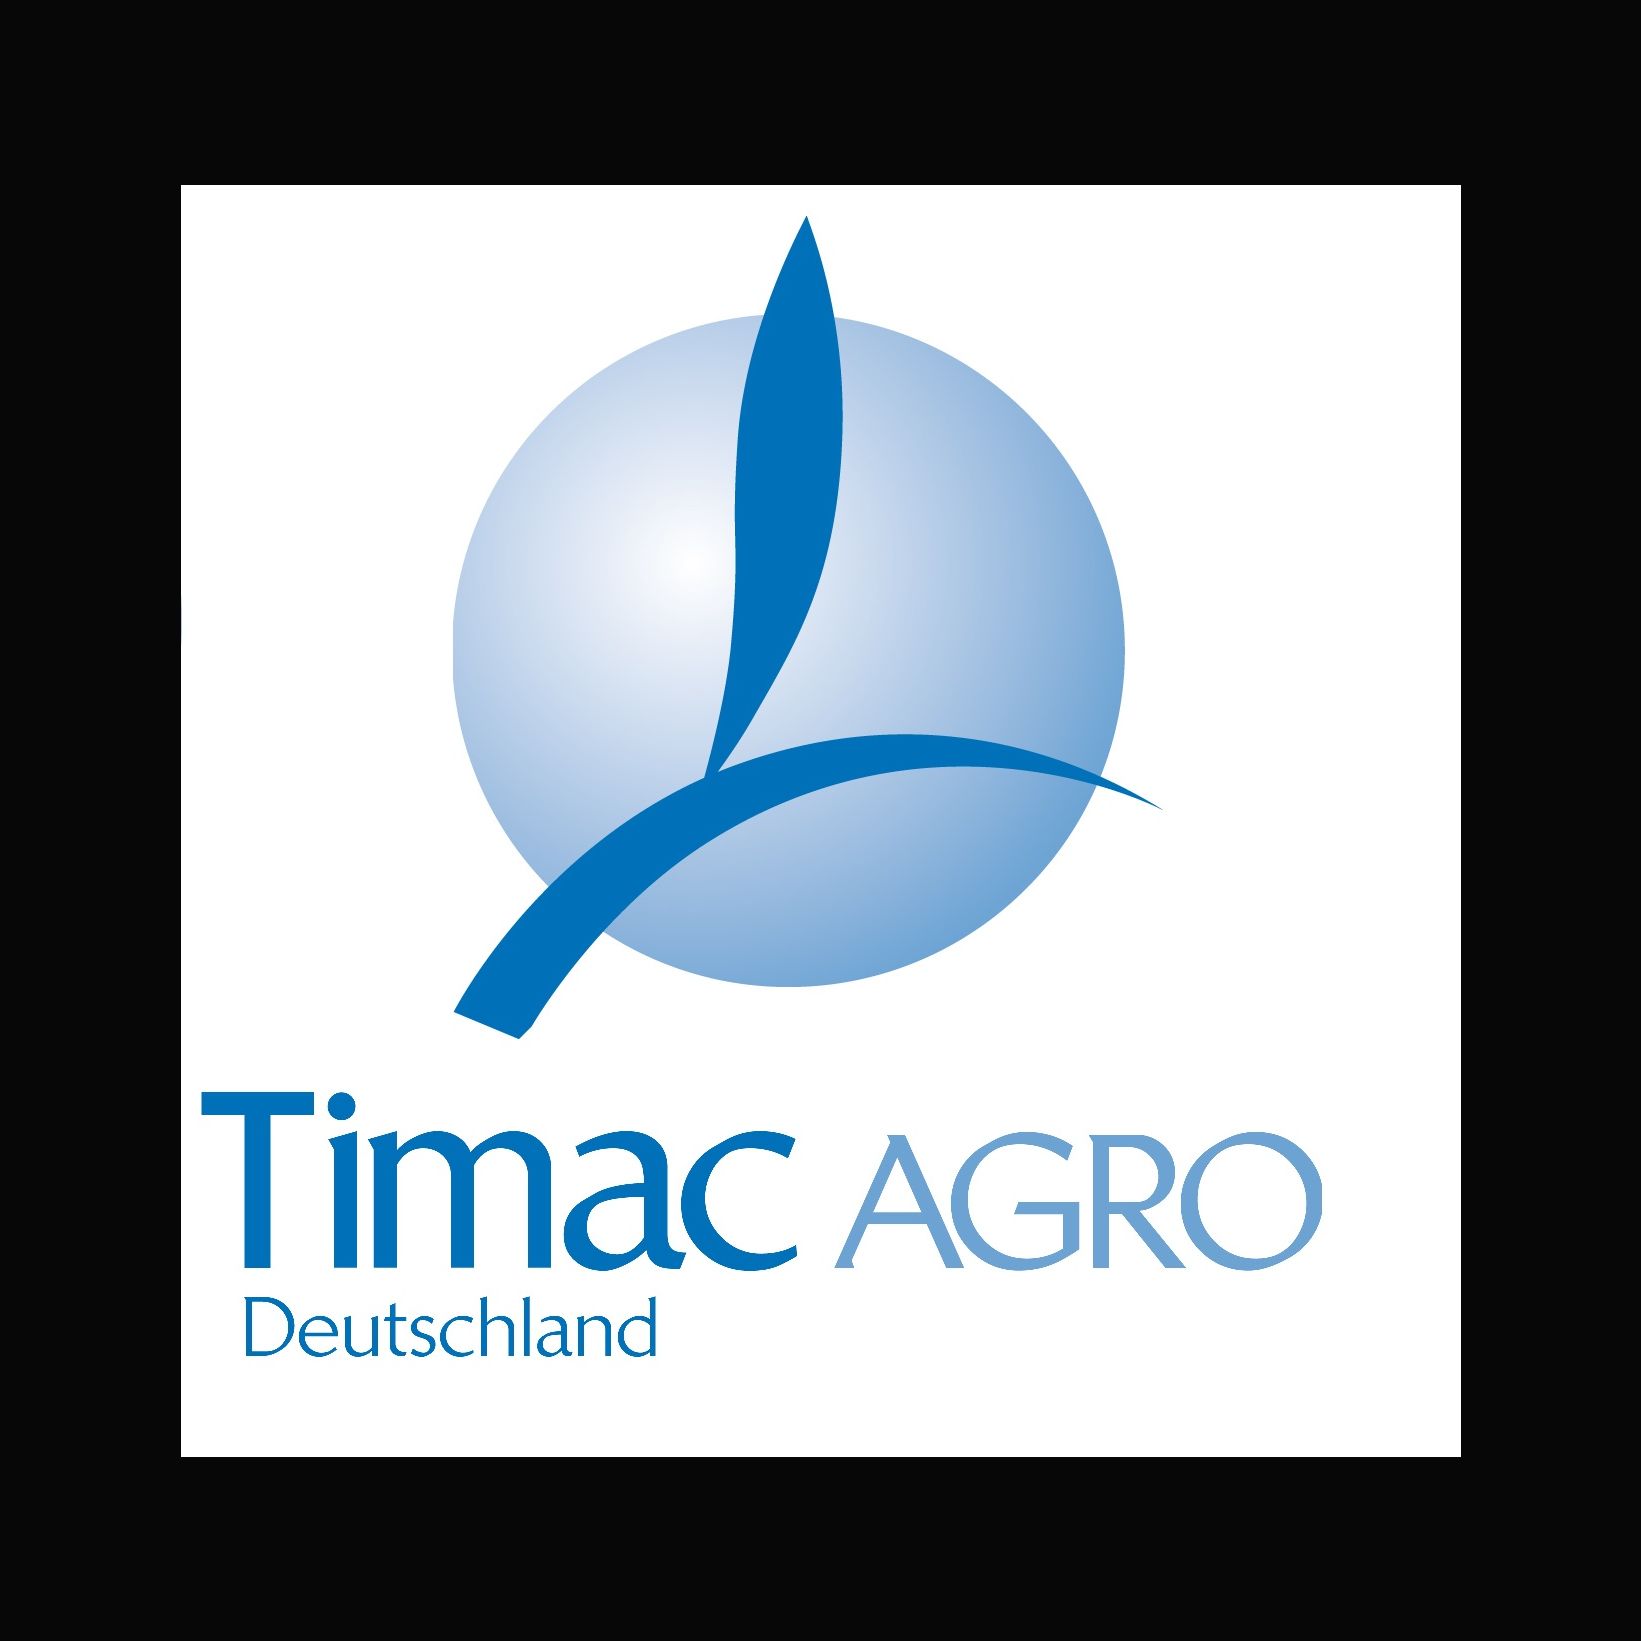 Timac Agro Deutschland GmbH